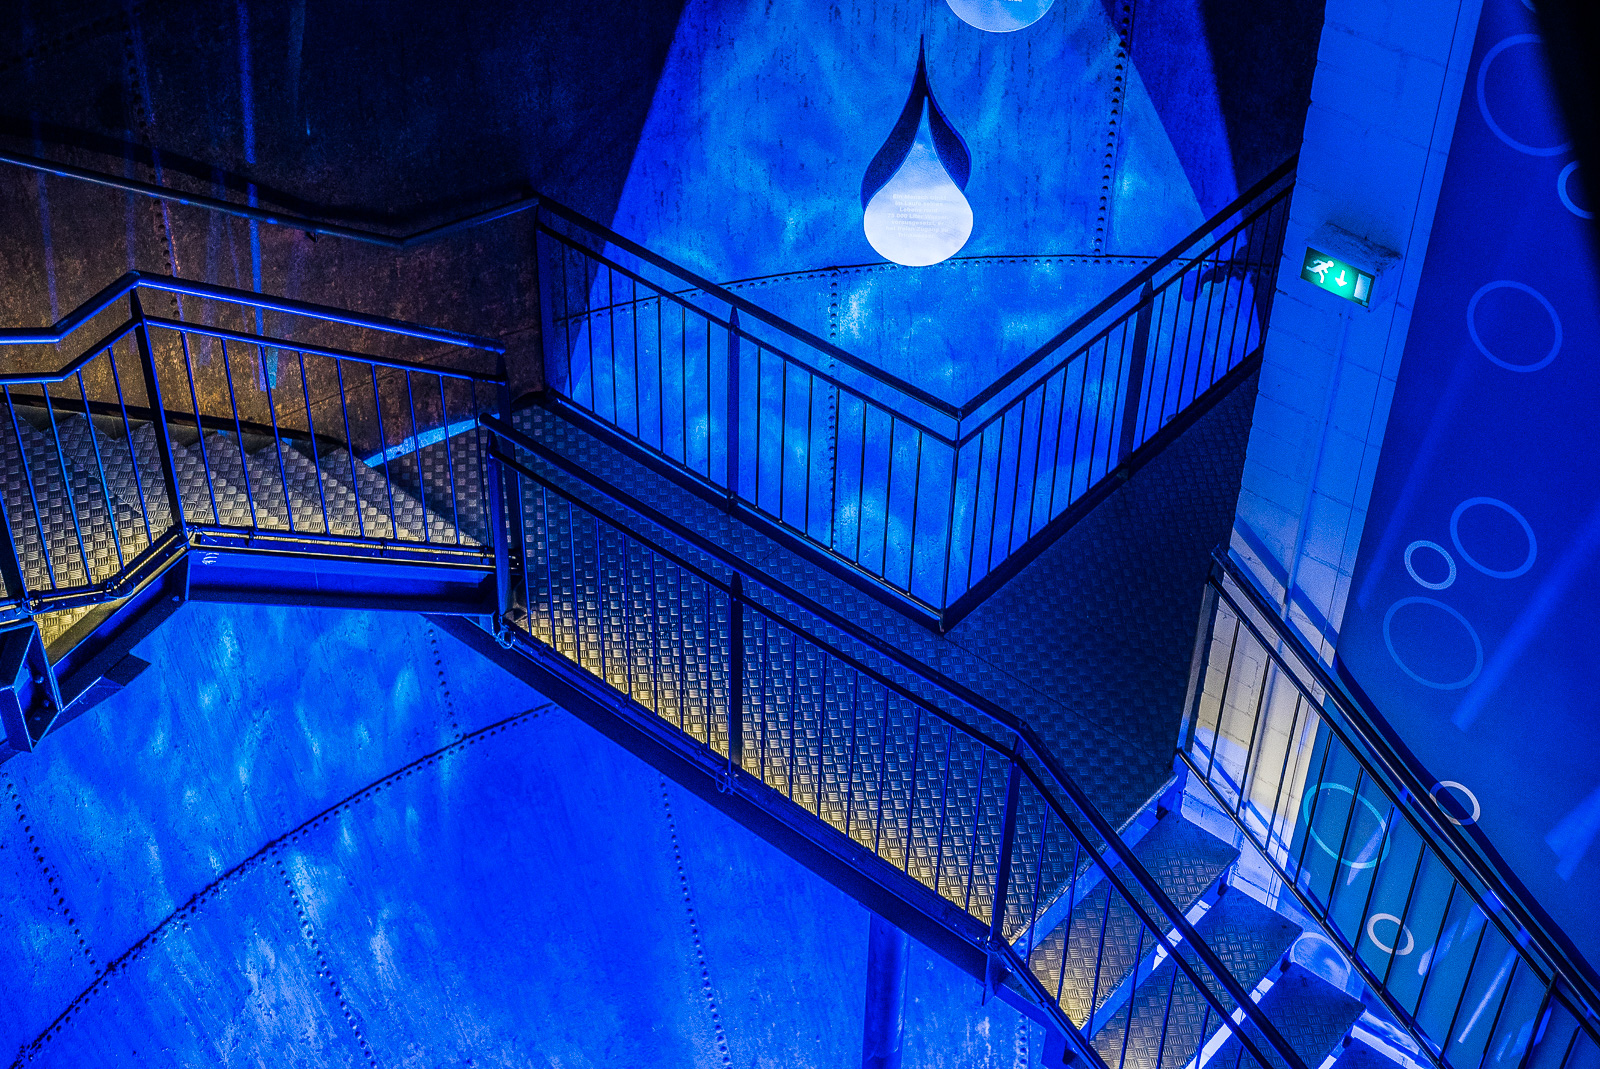 Treppenhaus des Wasserturms, intensiv blau lackiert und effektvoll beleuchtet (2)